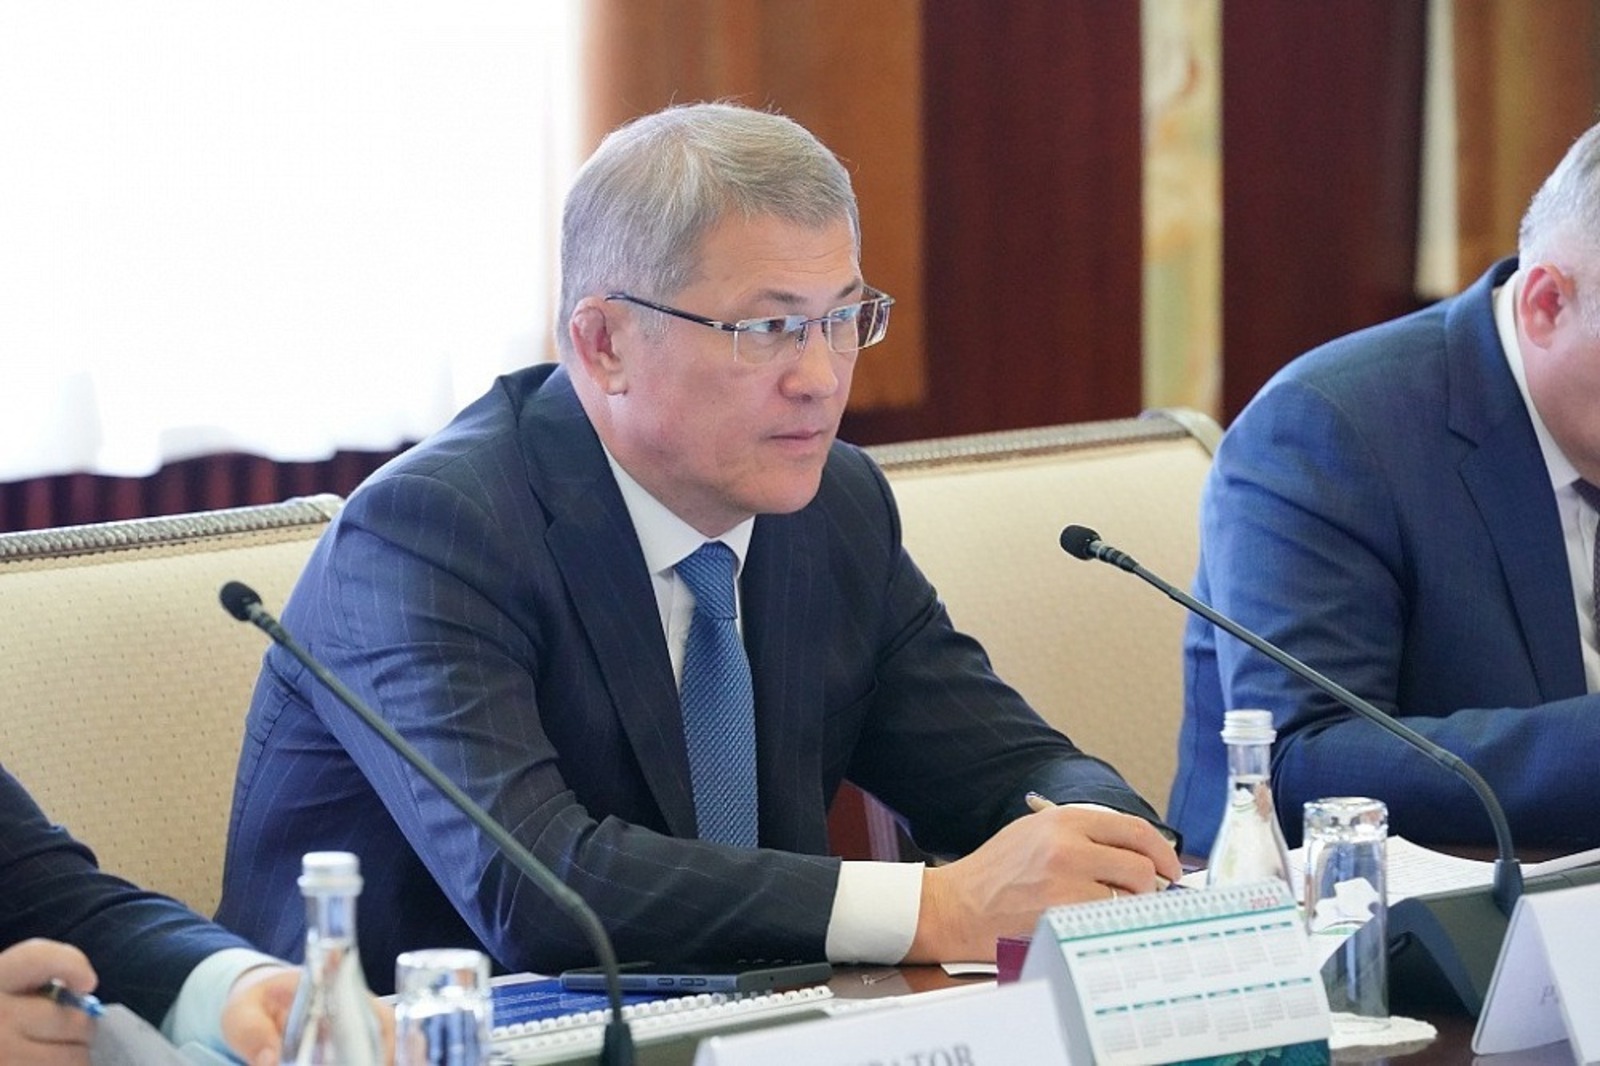 На Х форуме регионов России и Беларуси в Уфе обсудят направления взаимовыгодного партнерства